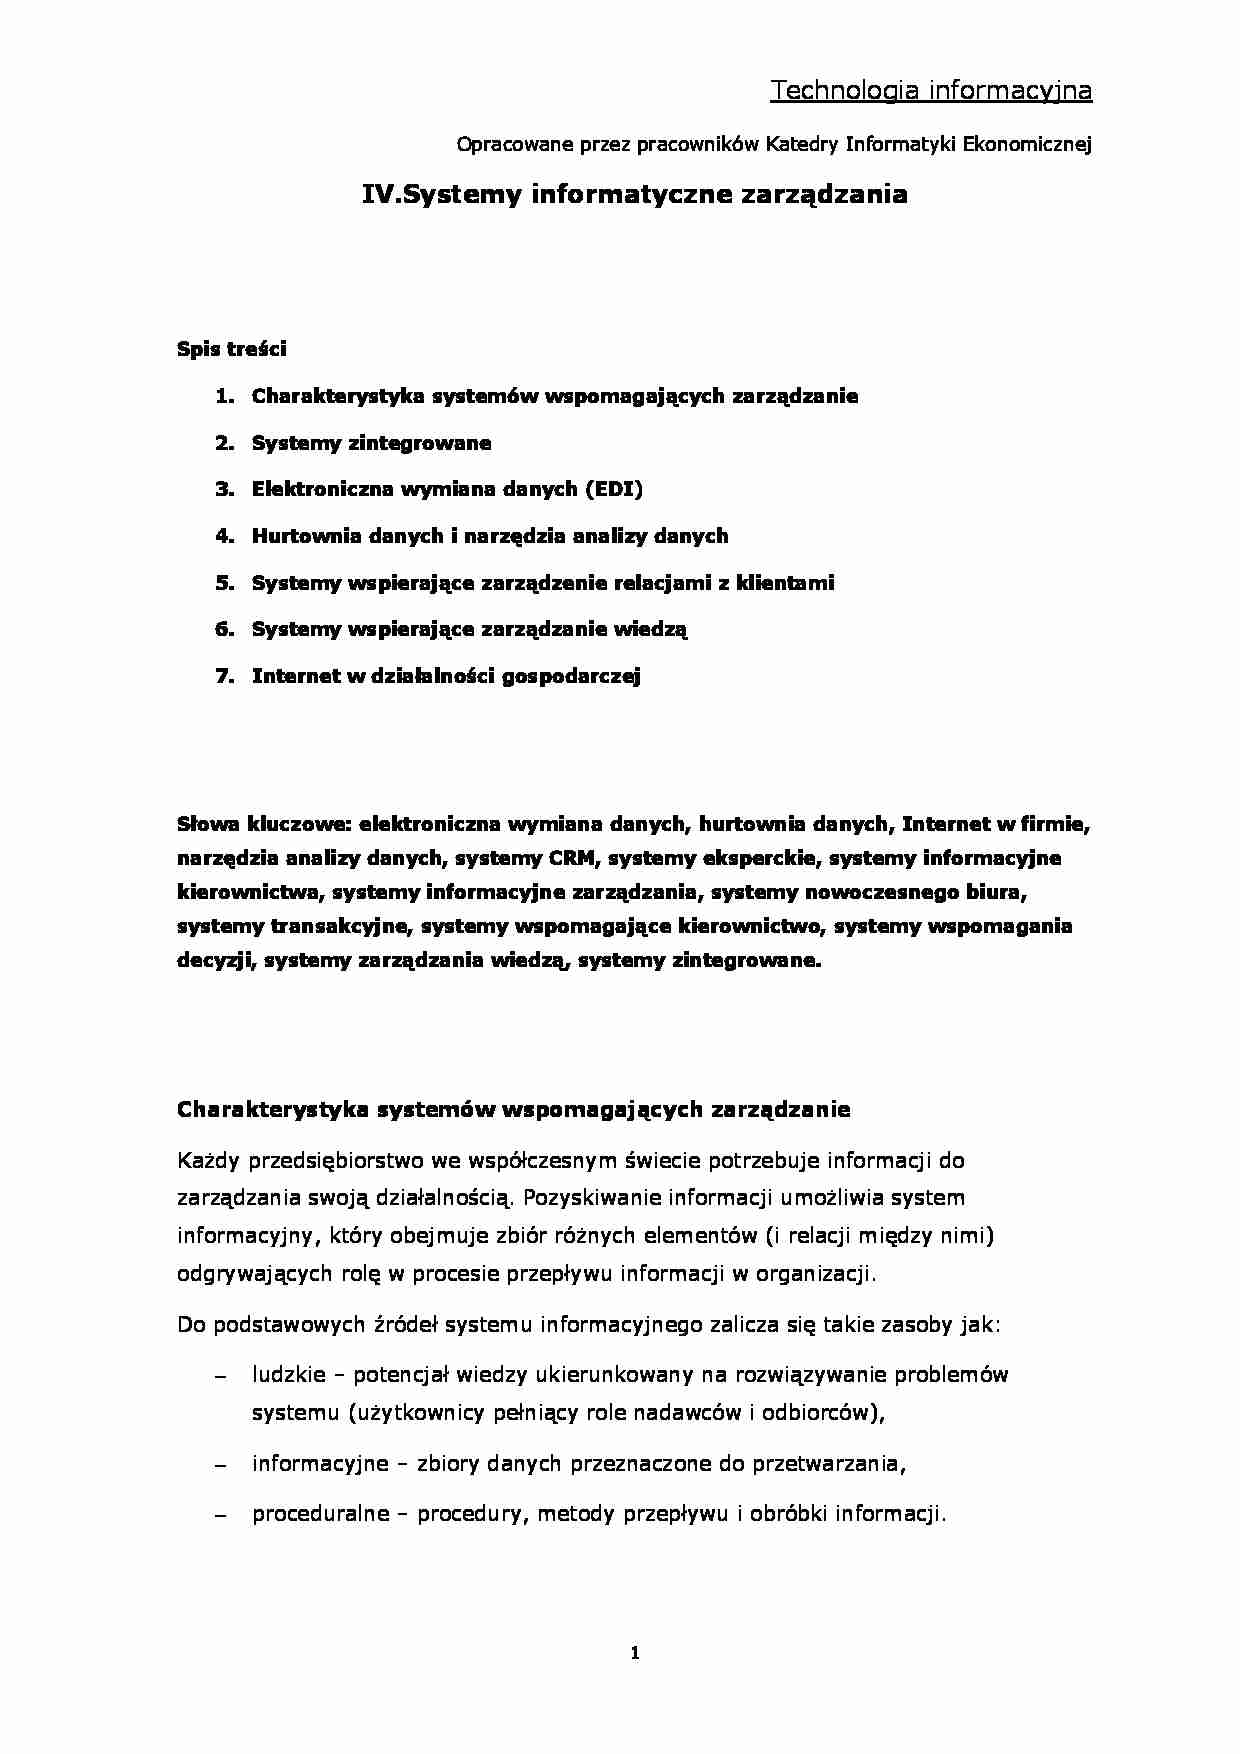  Informatyka - Systemy informatyczne Zarządzania - strona 1